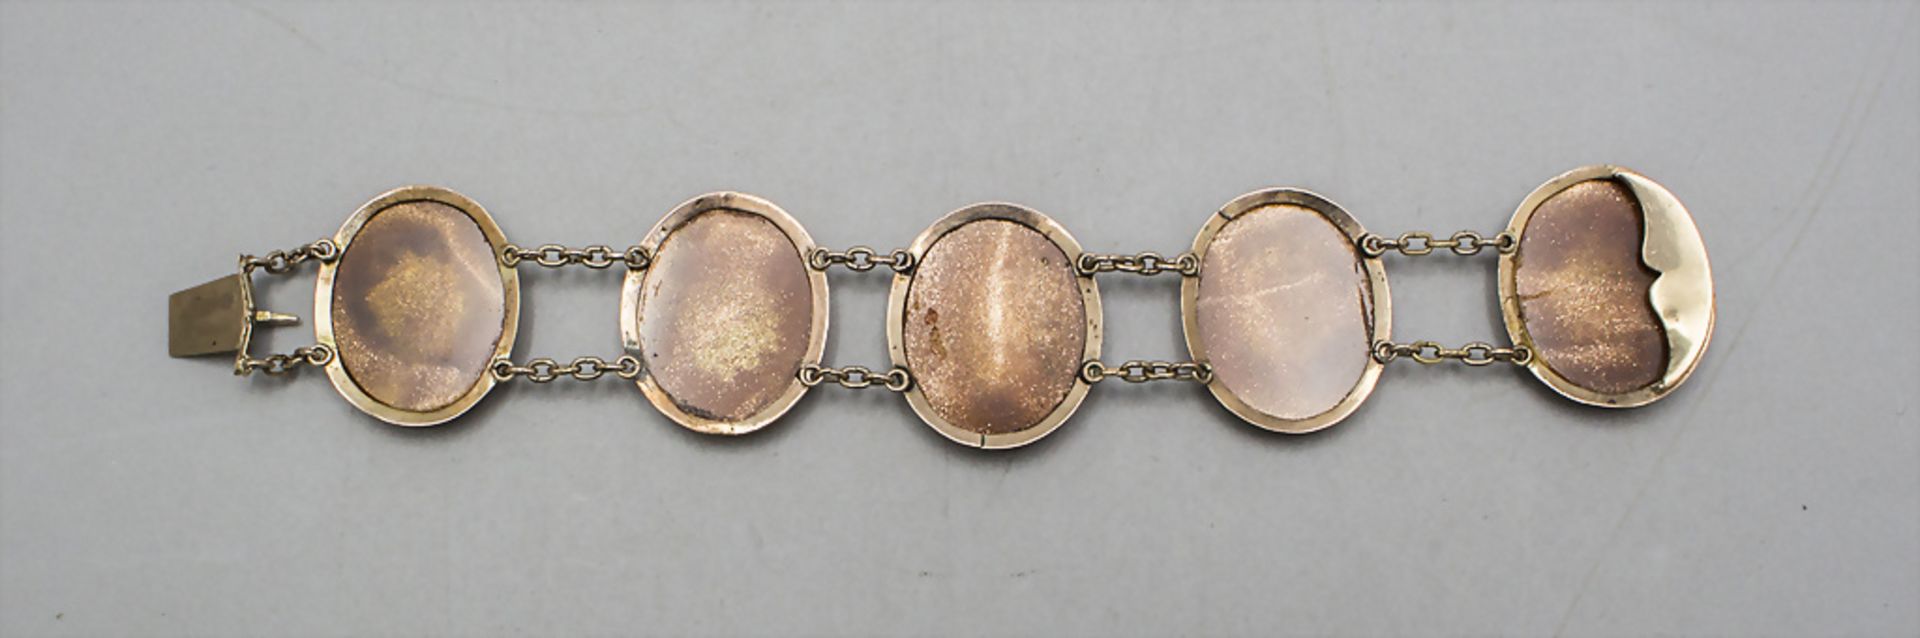 Pietra Dura-Armband / A pietra dura bracelet, Ende 19. Jh. - Image 2 of 4